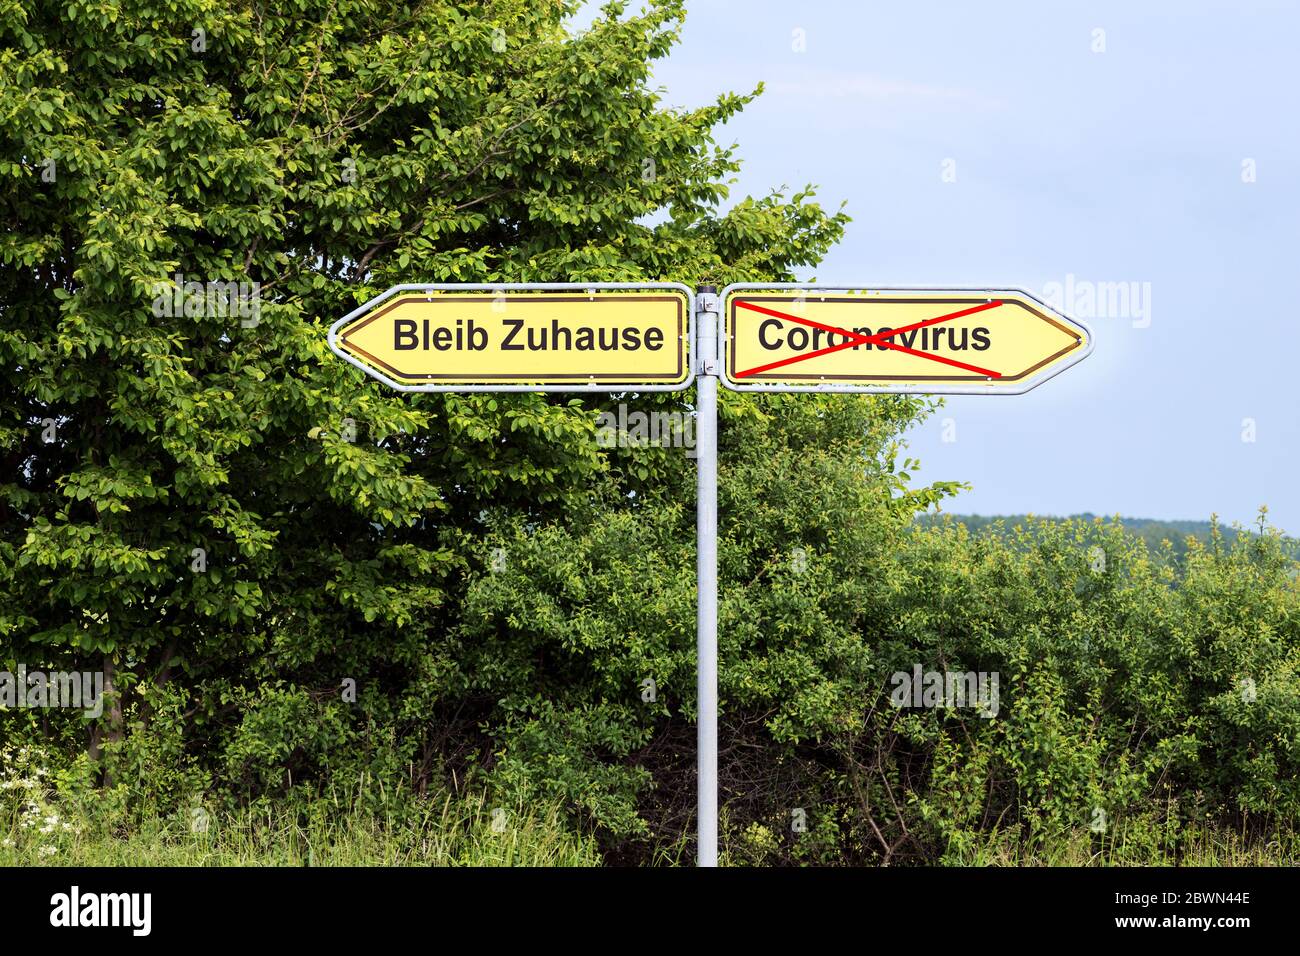 Des panneaux de signalisation jaunes pointent dans des directions opposées avec le texte allemand Bleib Zuhause signifiant rester à la maison, et coronavirus, paysage rural dans le backgroun Banque D'Images